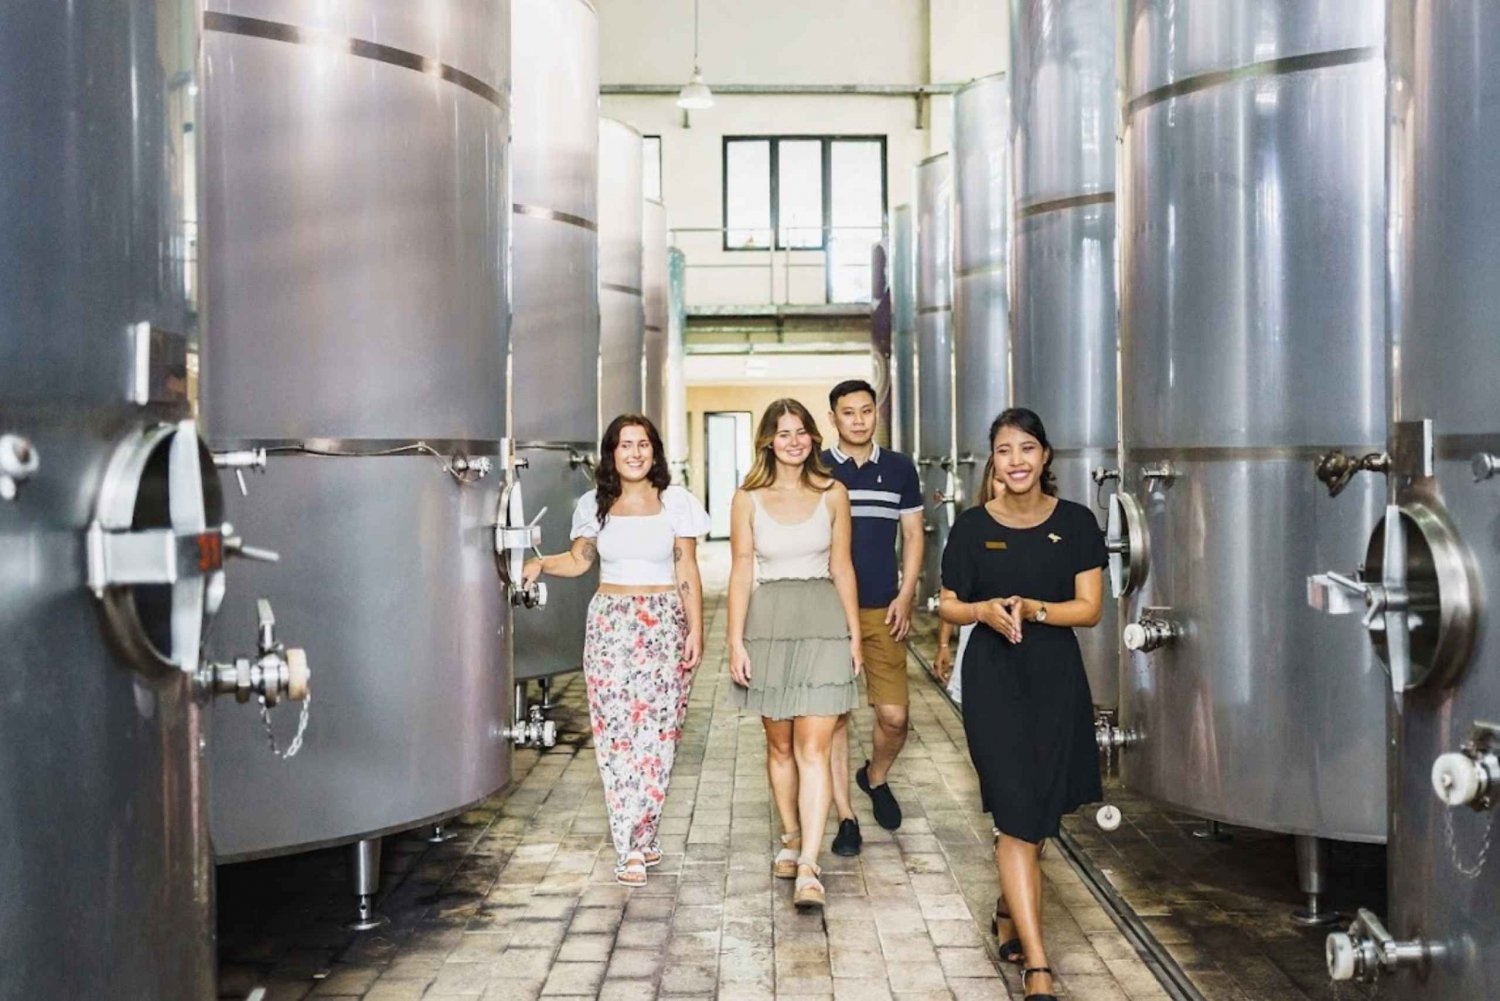 Bali : Visite touristique de l'usine de dégustation de vin avec visites touristiques optionnelles